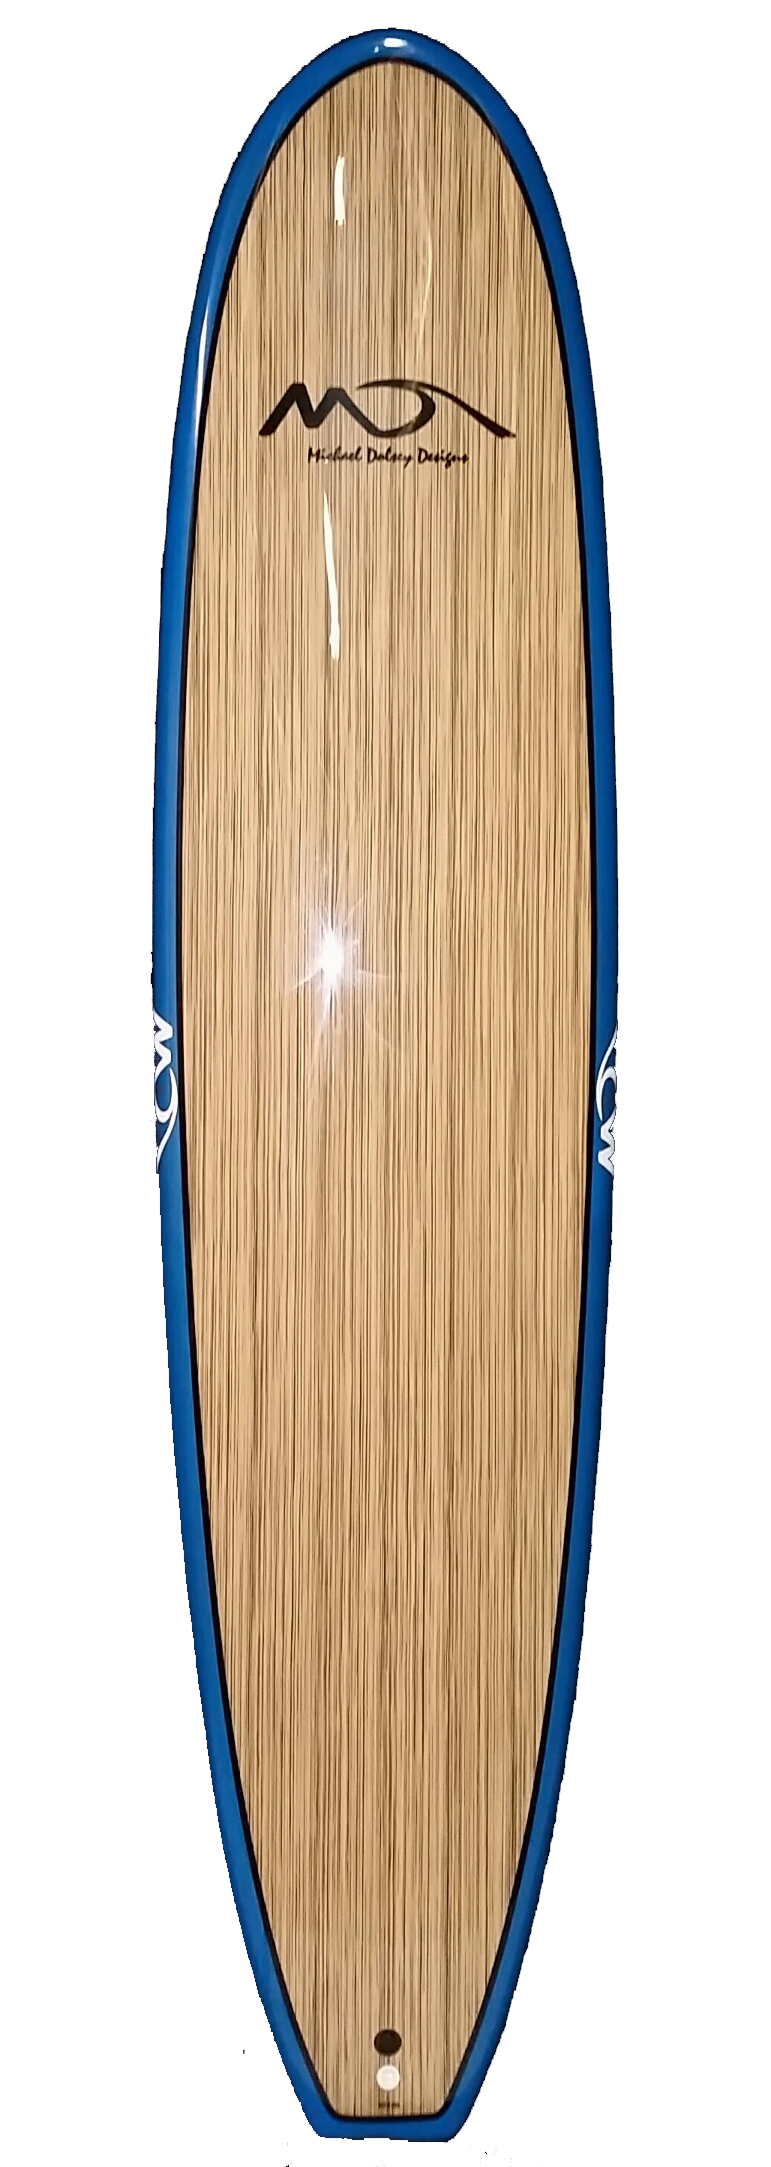 Michael Dolsey Hard Top Surf Board